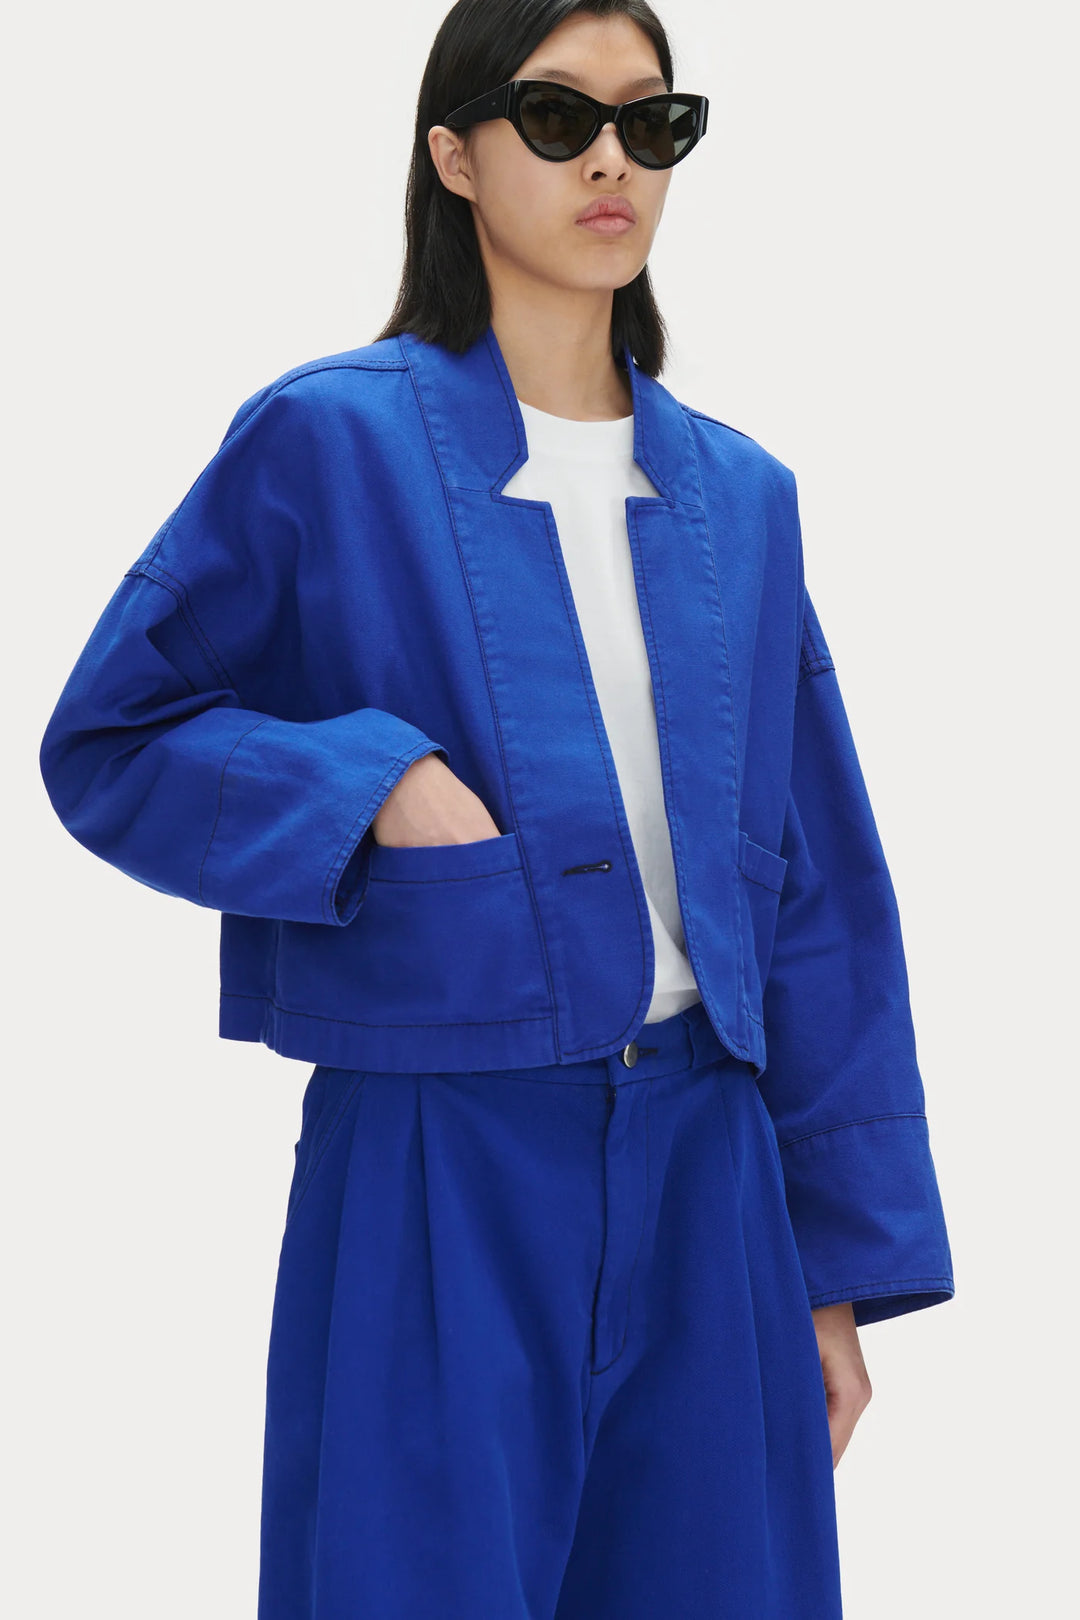 Dealian Jacket - Blue